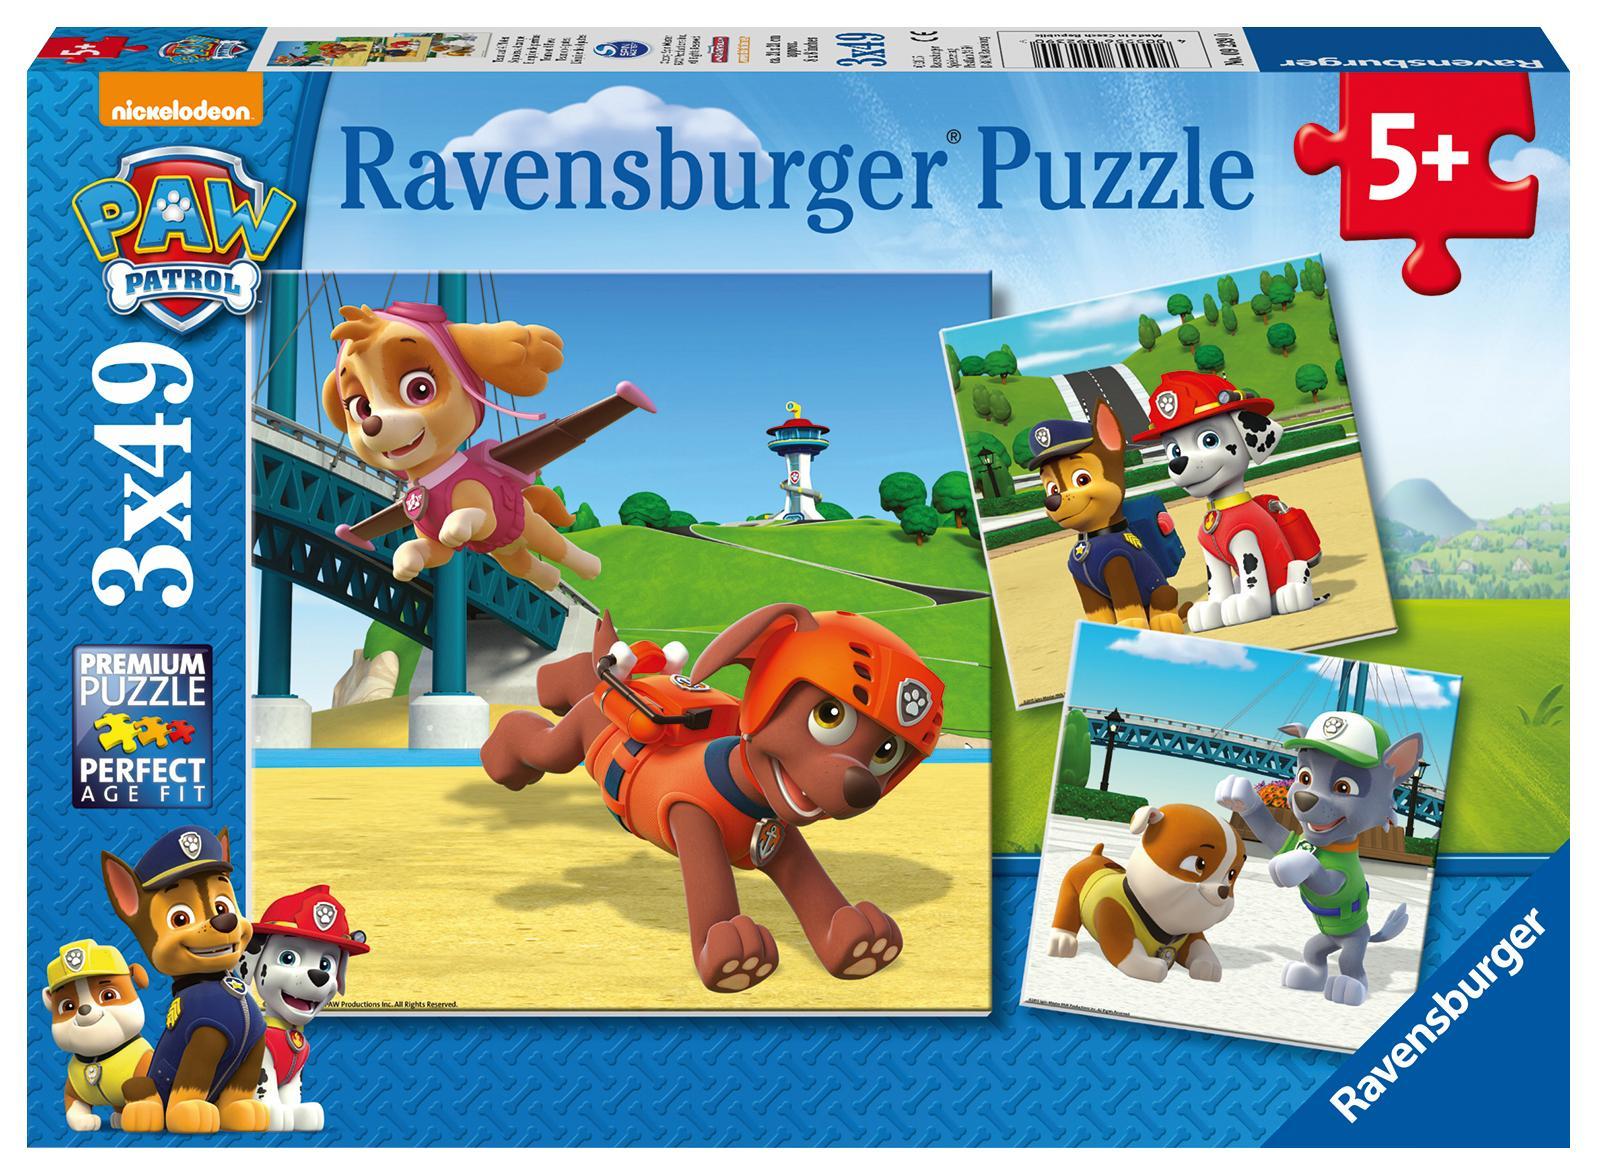 Ravensburger Verlag Puzzle TEAM AUF 4 PFOTEN 3x49-teilig